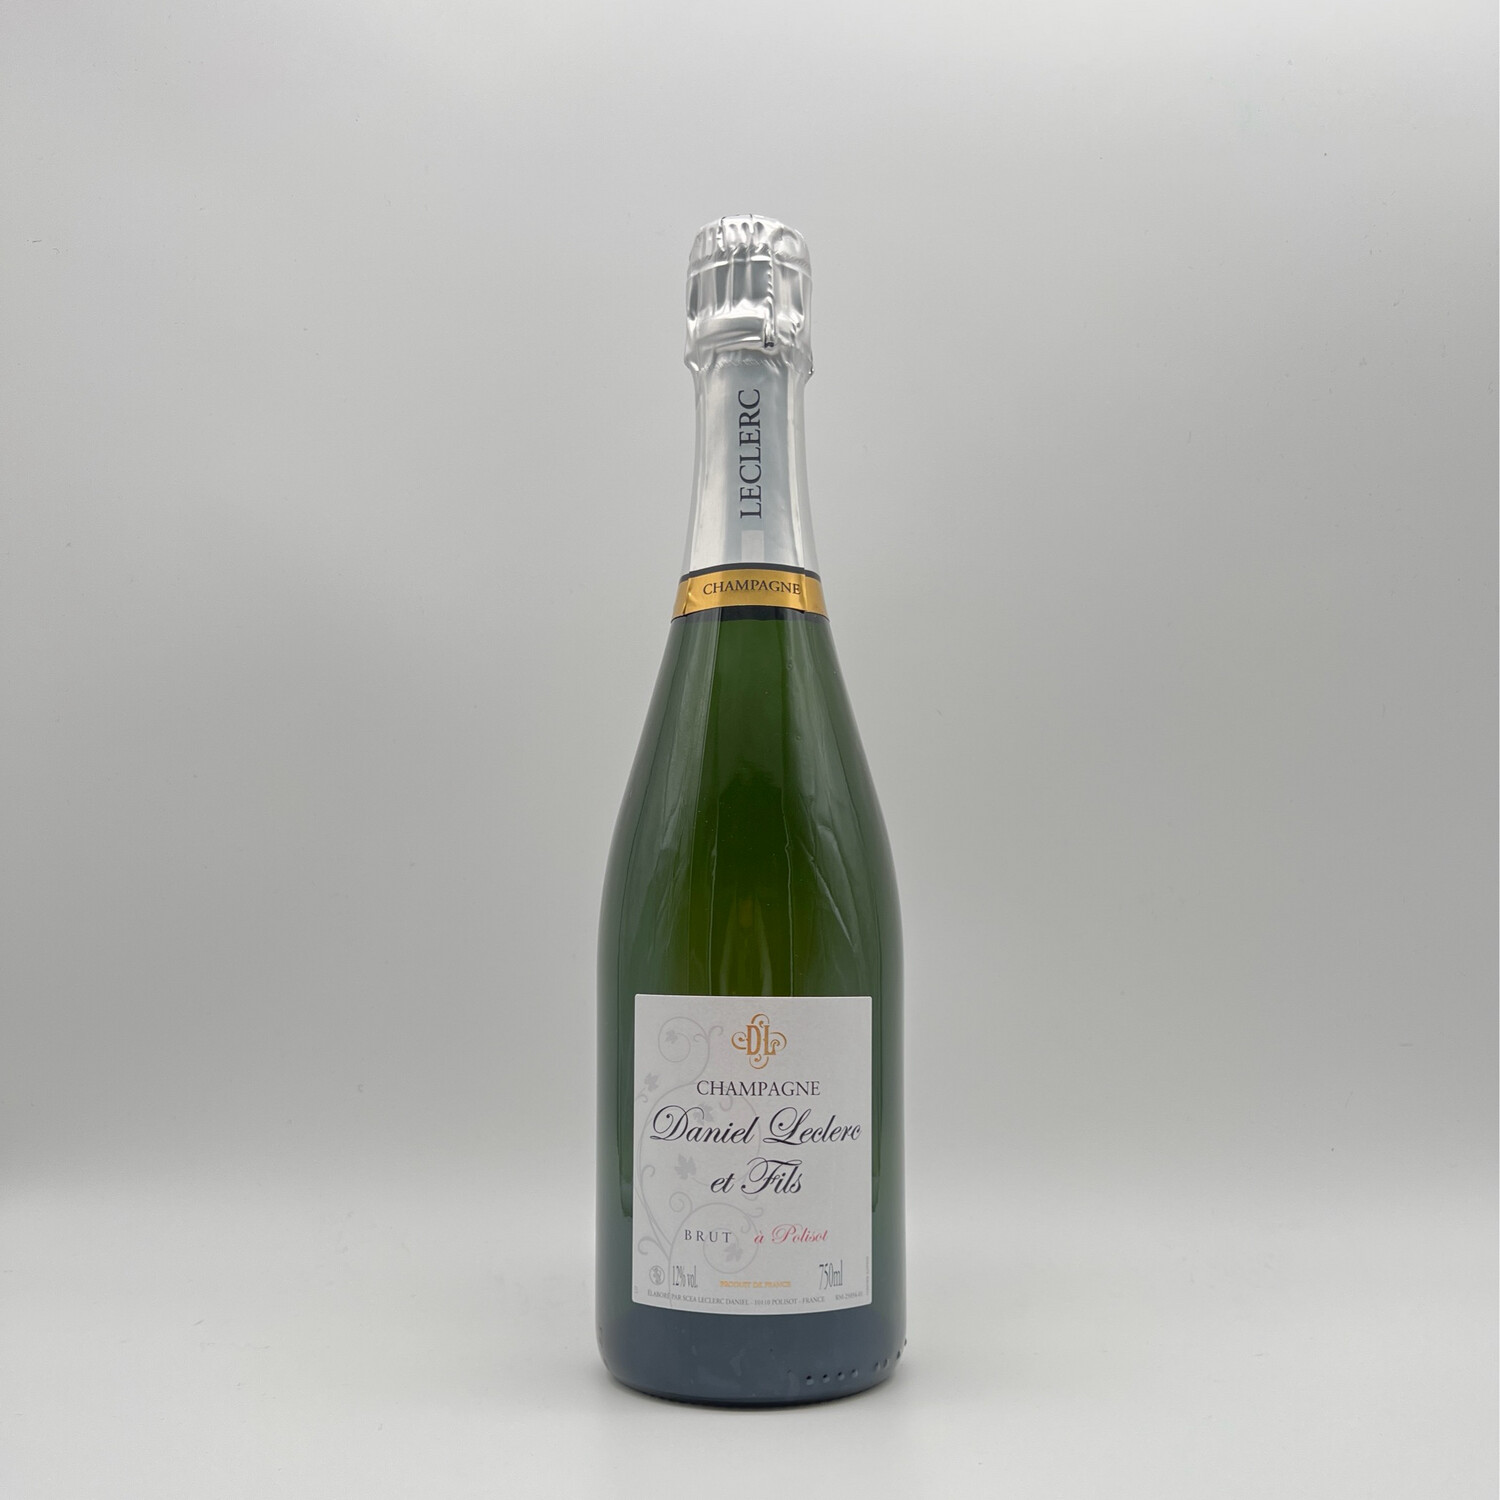 Daniel Leclerc et Fils- Champagne Brut a Polisot